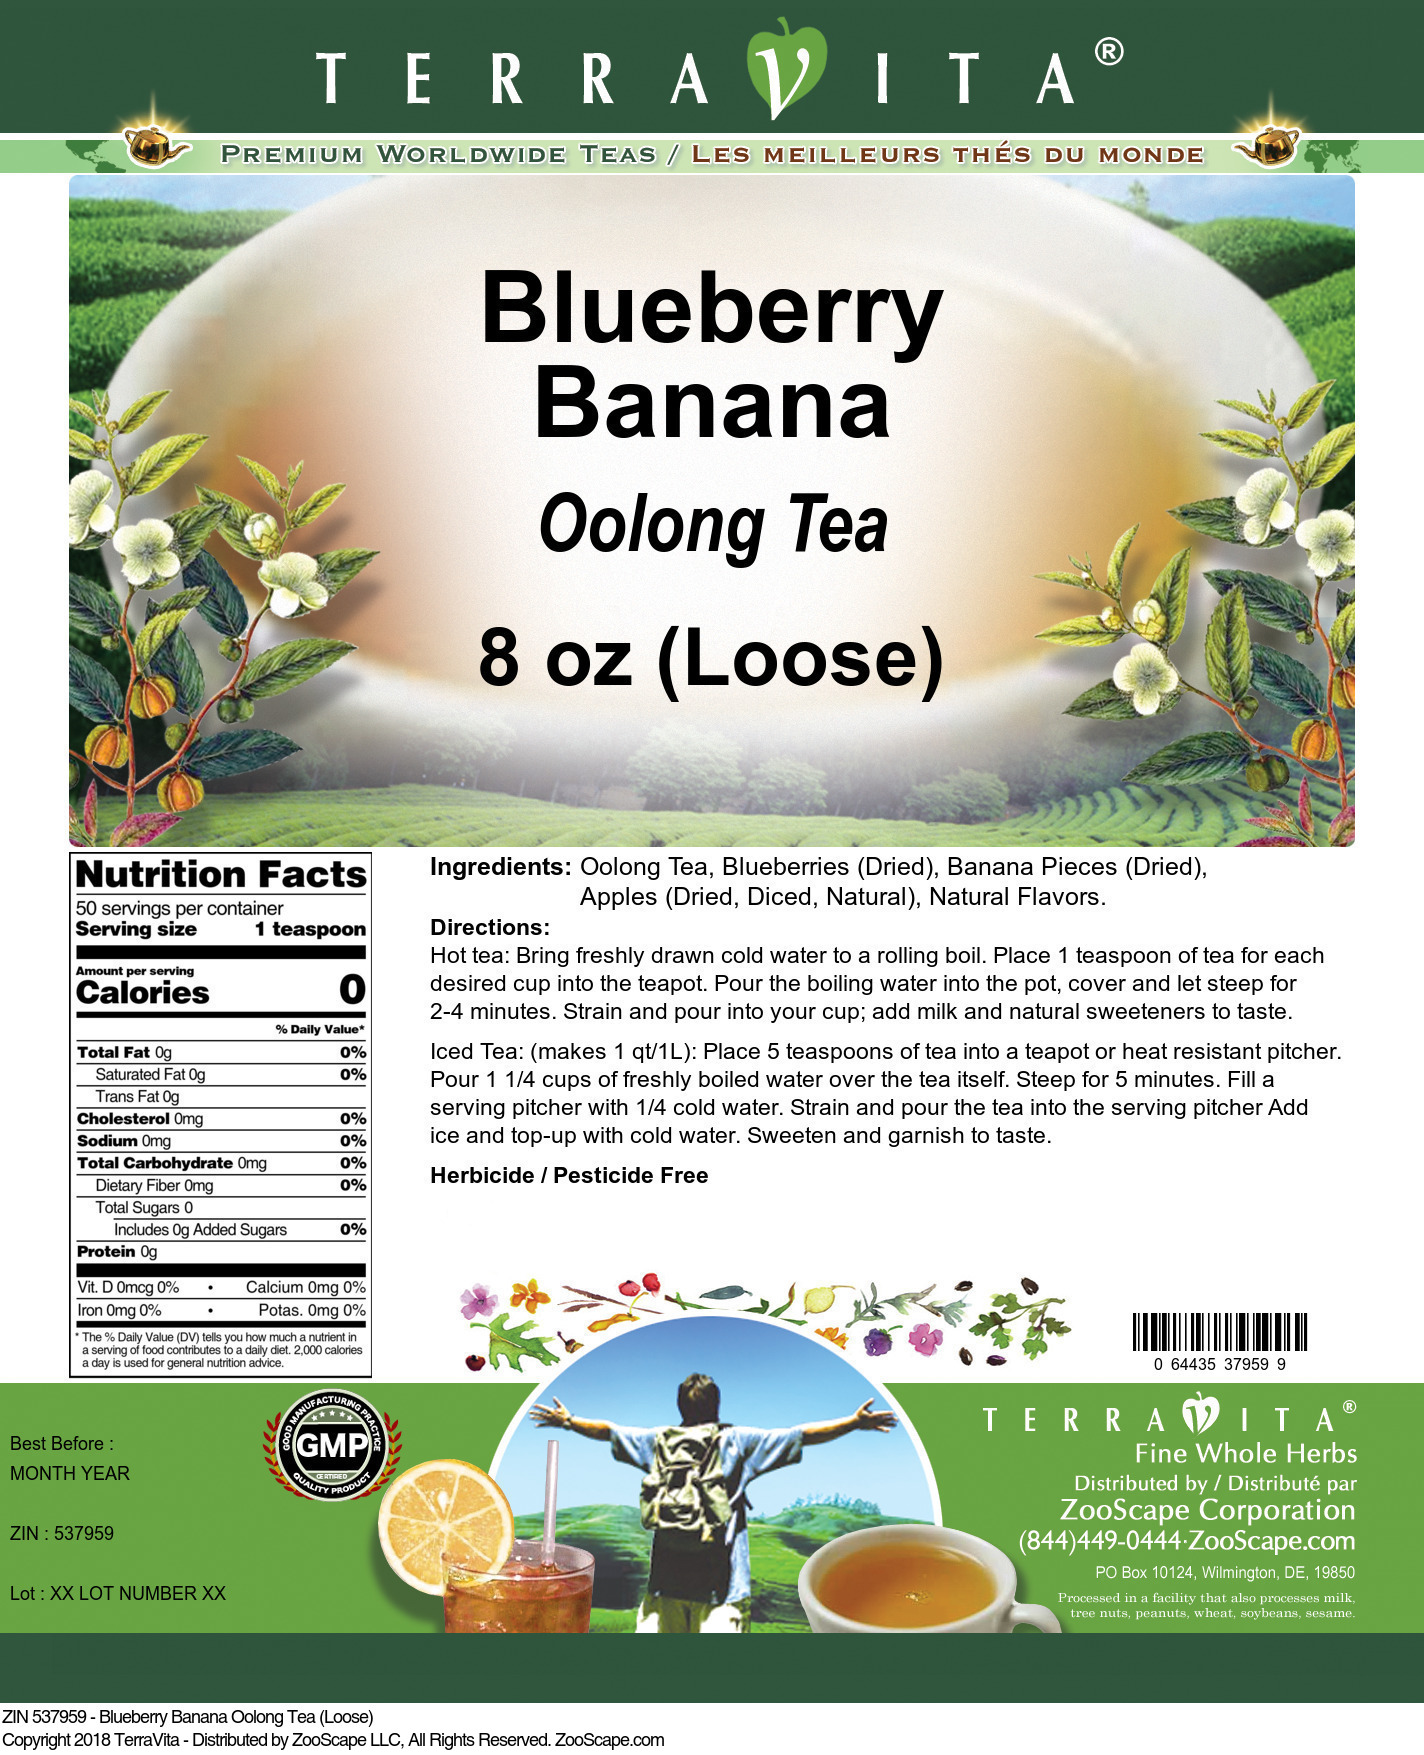 Blueberry Banana Oolong Tea (Loose) - Label